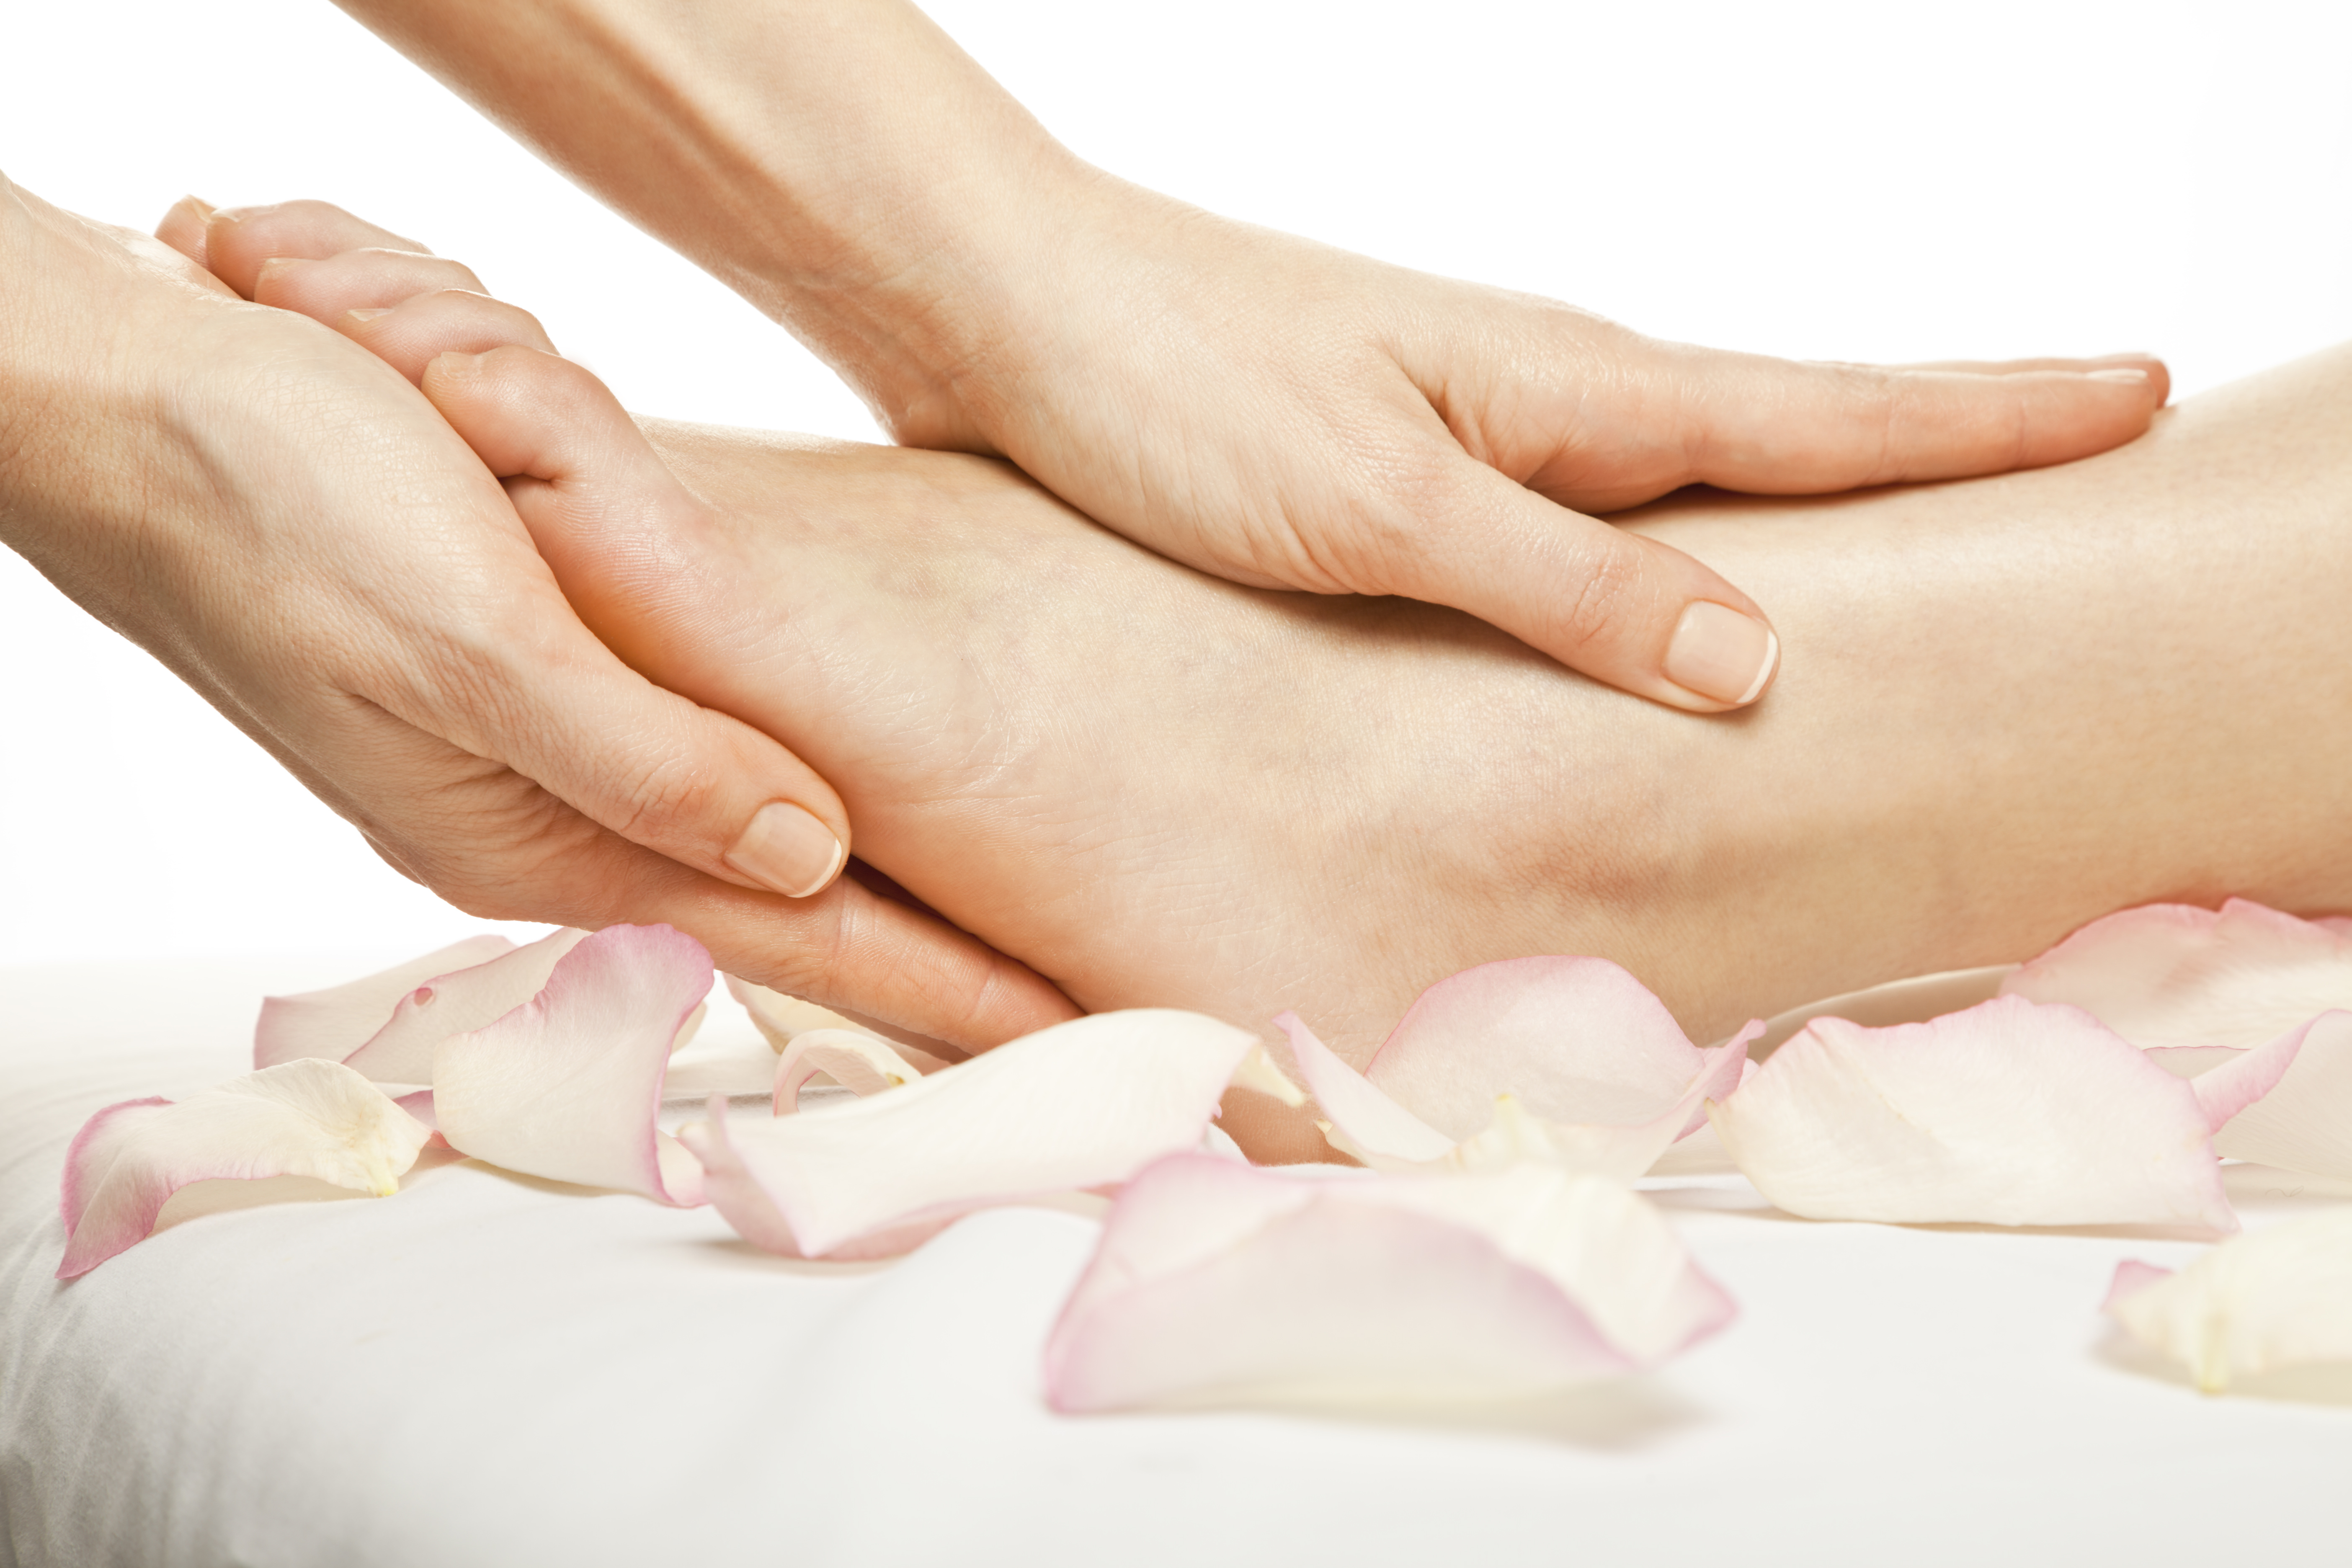 Gently massage. Массаж ног. Массаж ног лепестки роз. Нежные женские ноги на массаже. Нежный массаж ног.